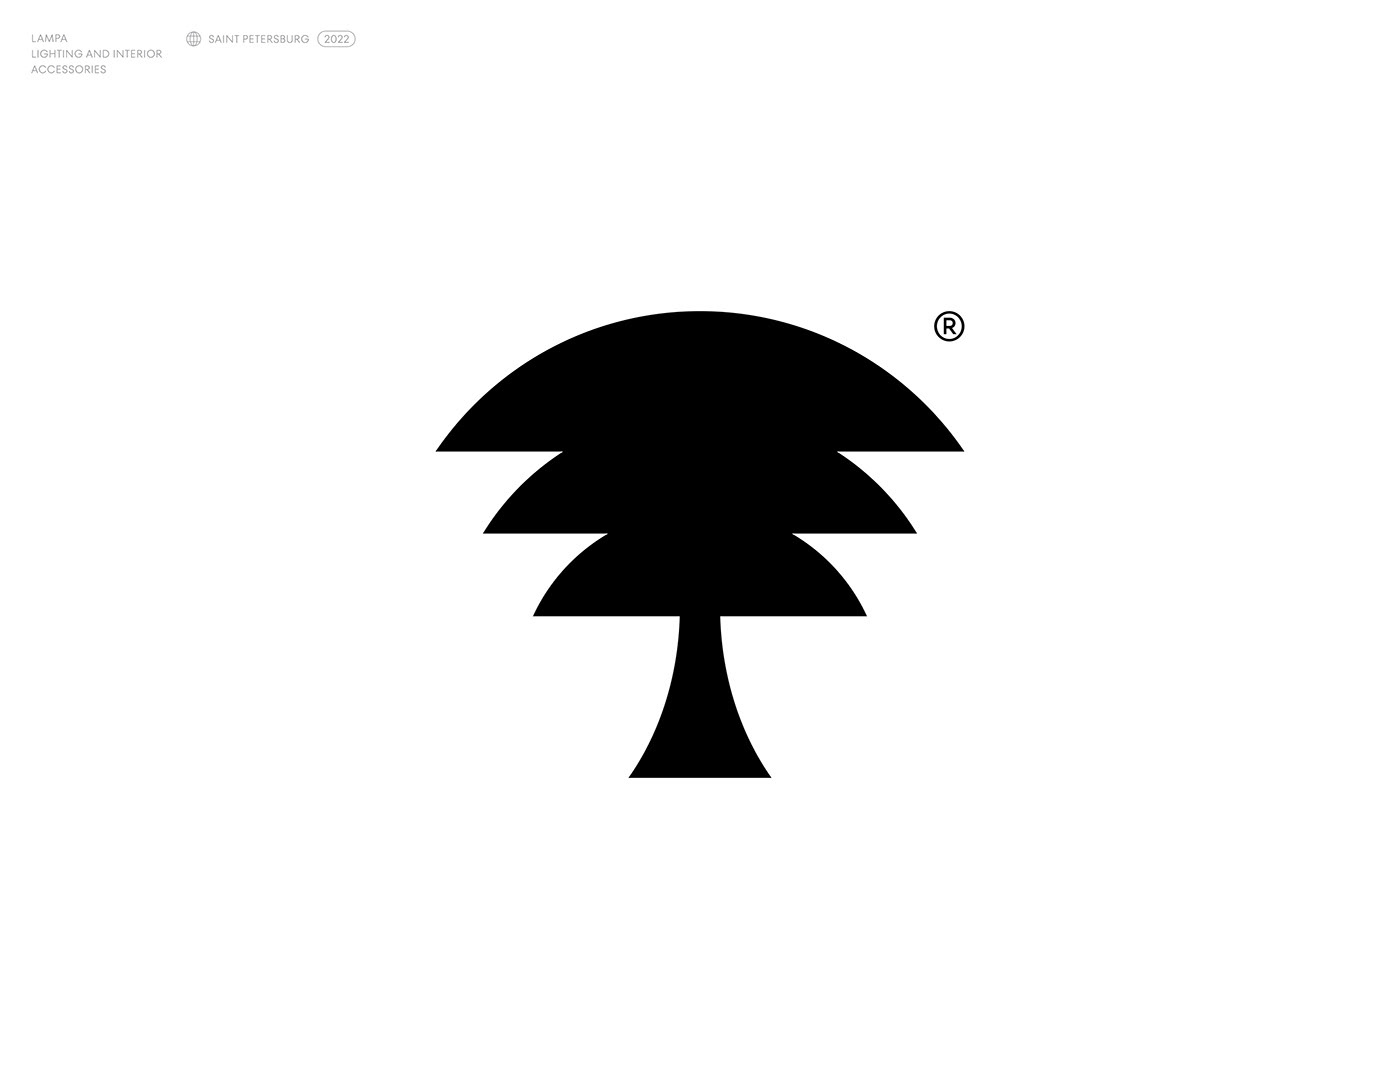 black brand identity branding  identity logo Logo Design Logotype mark minimal symbol